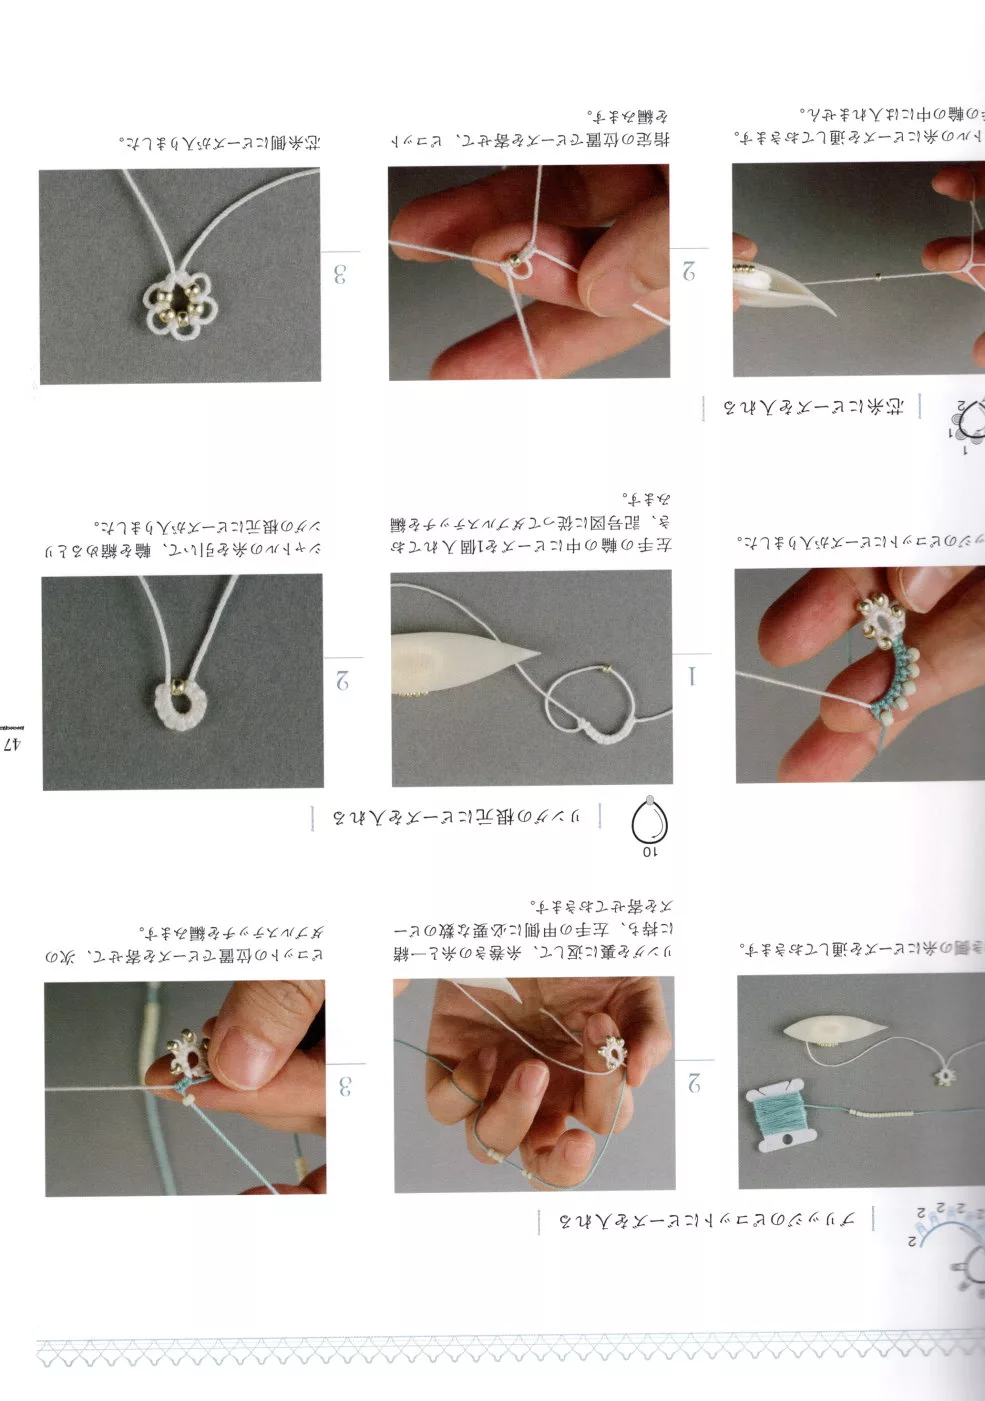 加入串珠的編織法